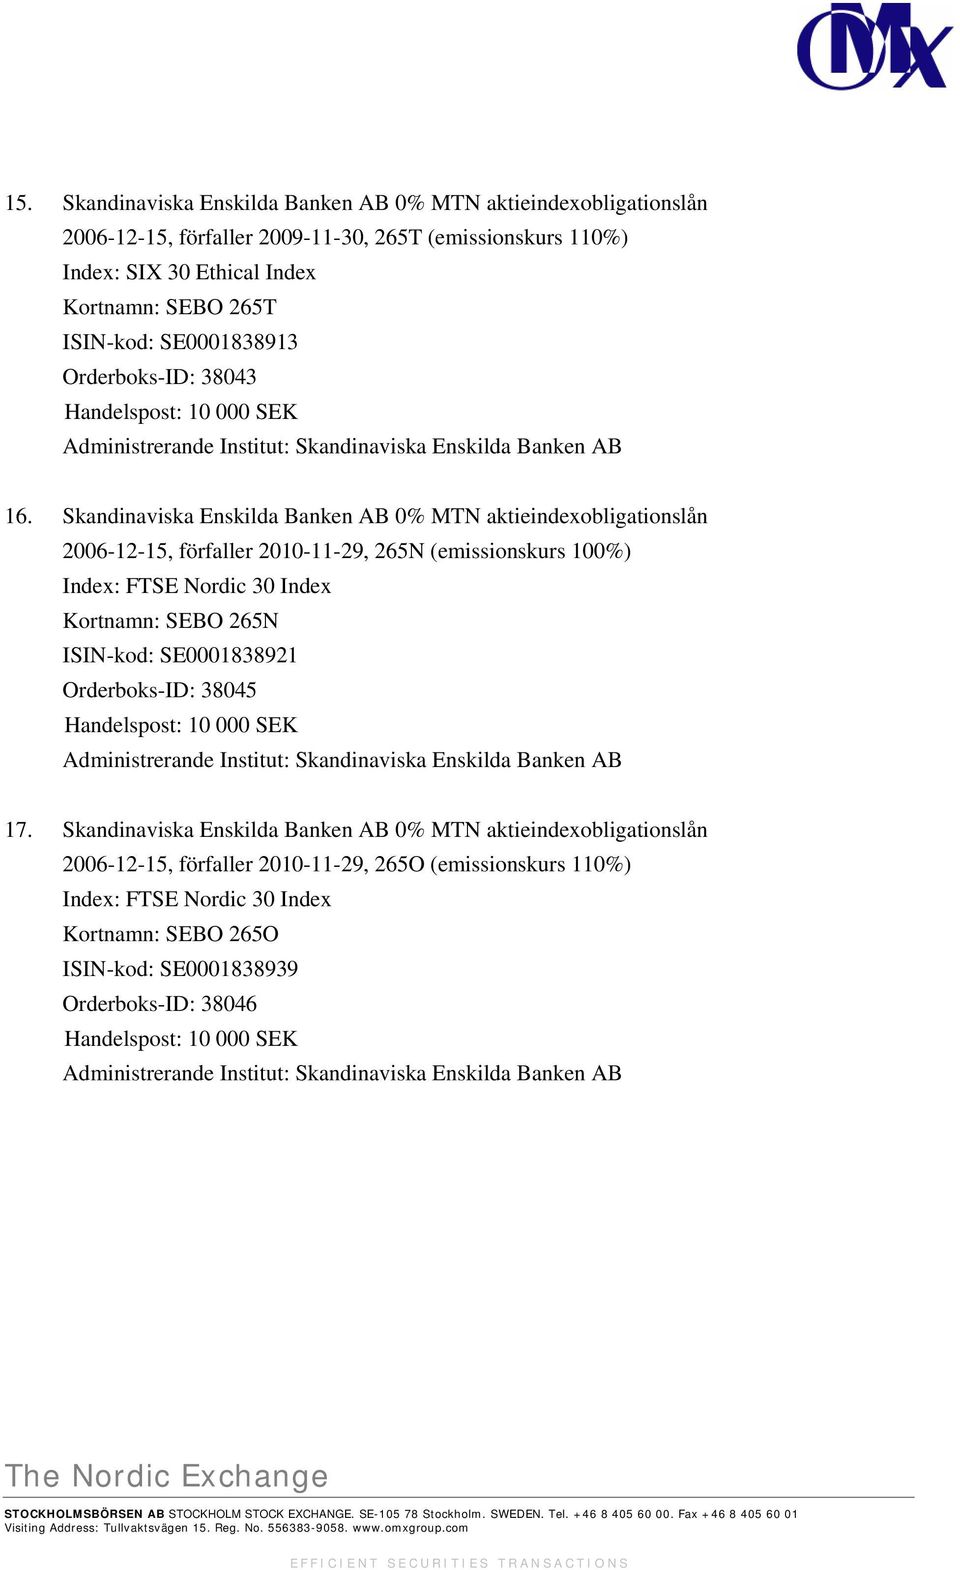 Skandinaviska Enskilda Banken AB 0% MTN aktieindexobligationslån 2006-12-15, förfaller 2010-11-29, 265N (emissionskurs 100%) Index: FTSE Nordic 30 Index Kortnamn: